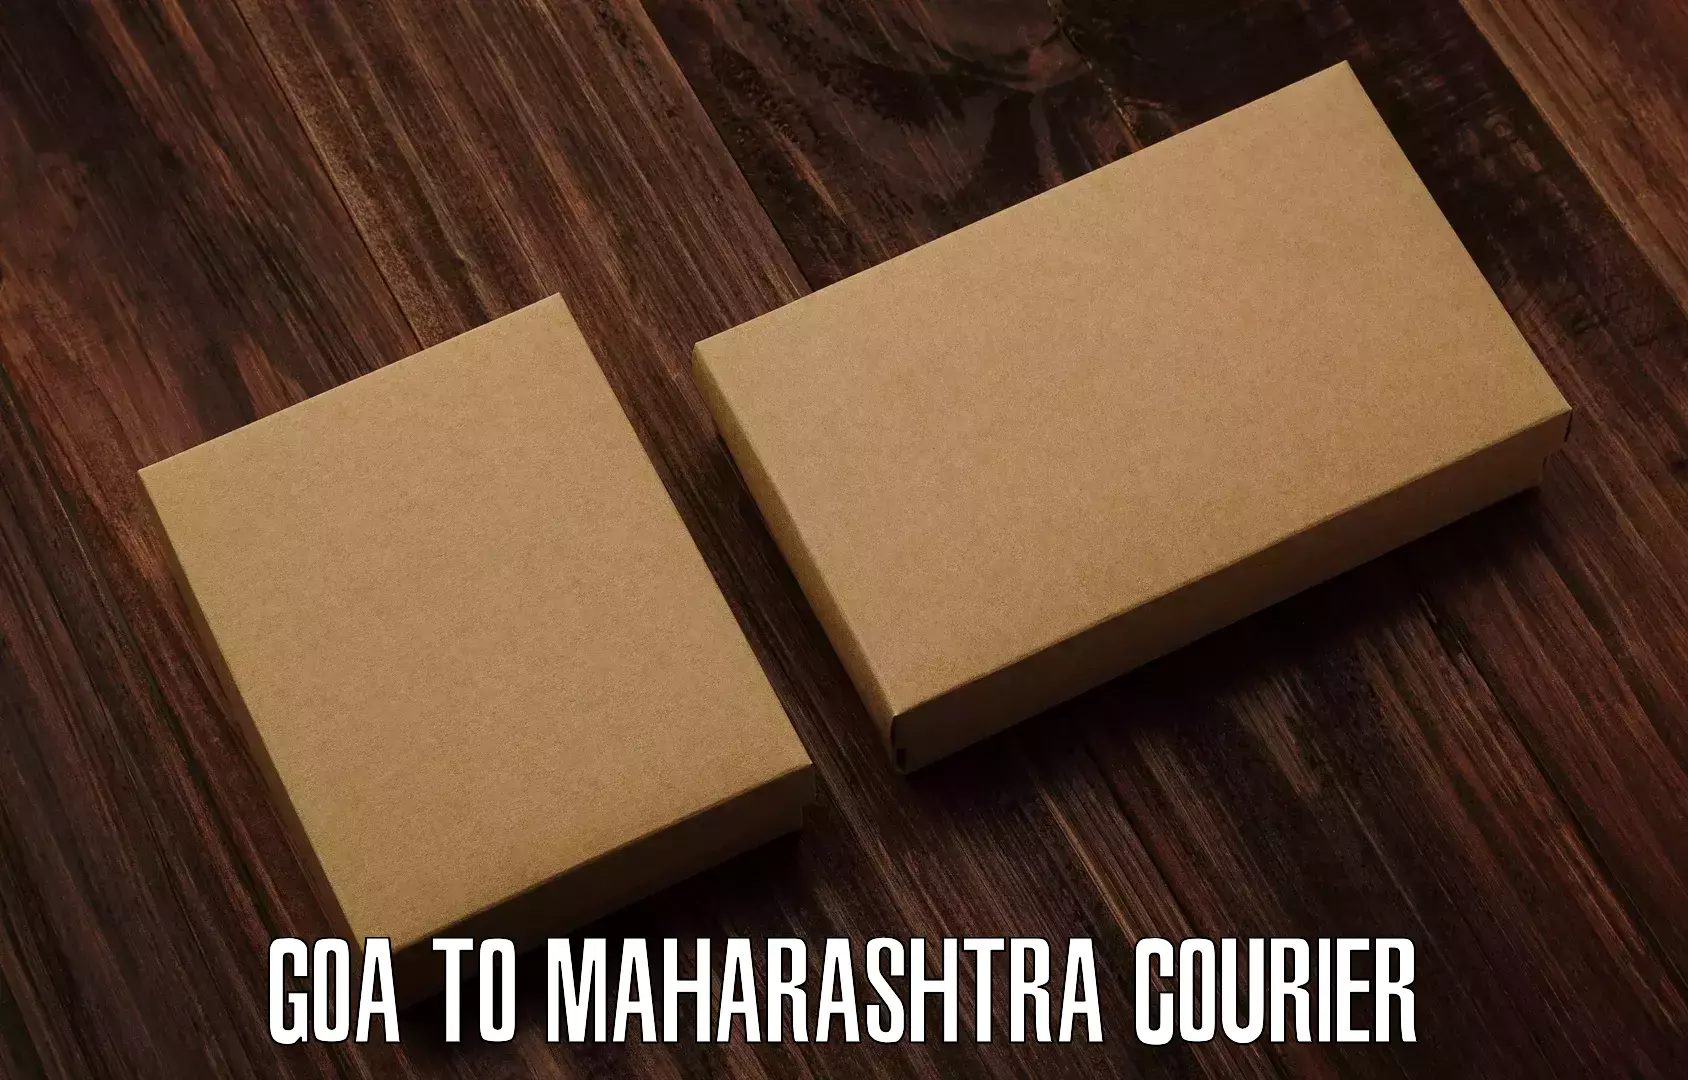 Customer-focused courier Goa to Dindori Nashik